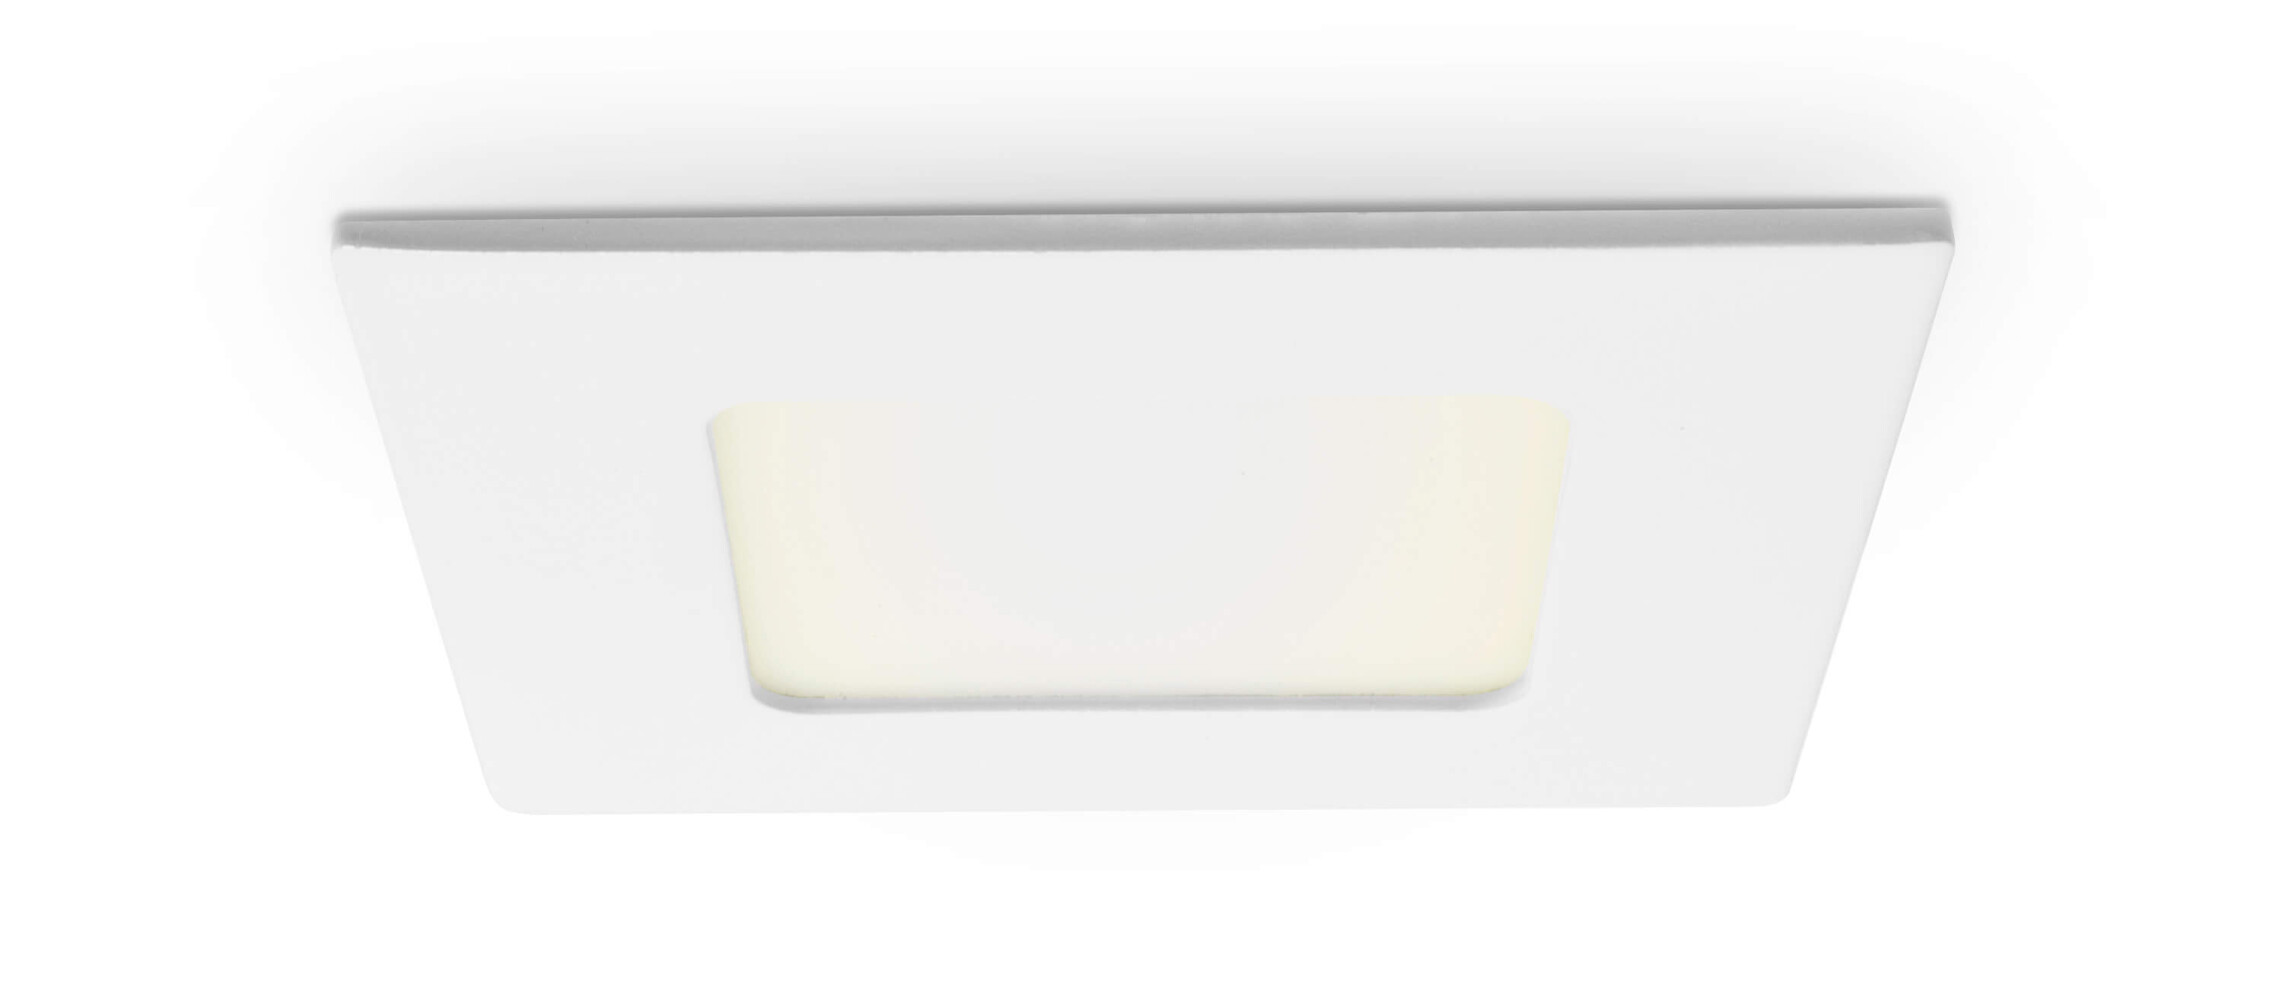 Modisches quadratisches LED Panel von LED Universum in neutralem Weiß